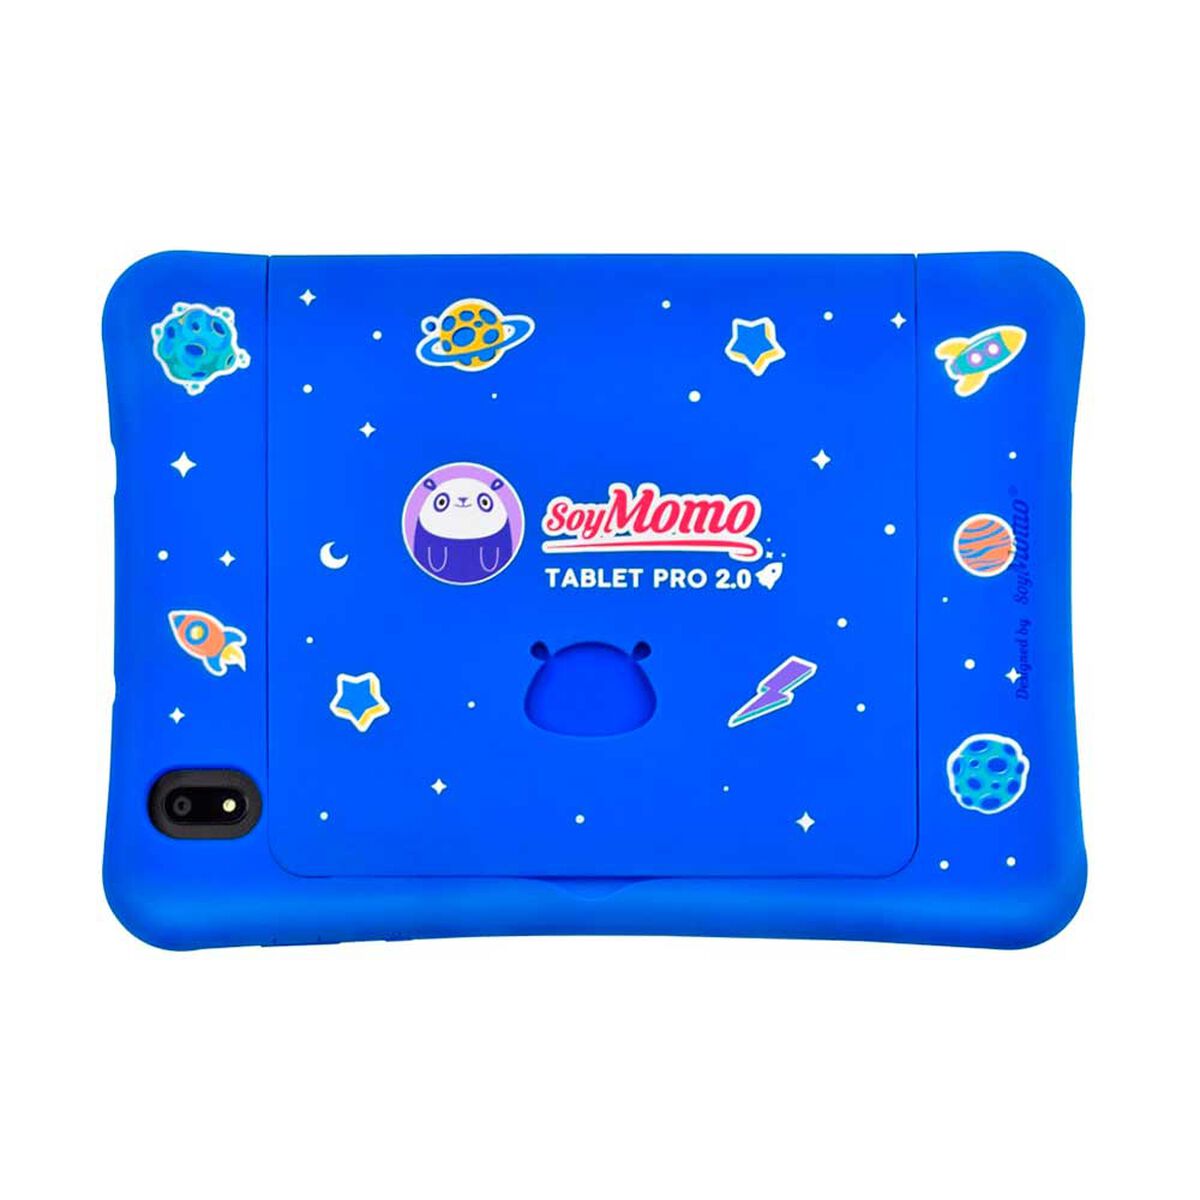 Tablet para Niños SoyMomo Control Parental Pro 2.0 Octa Core 4GB 64GB 8" Azul